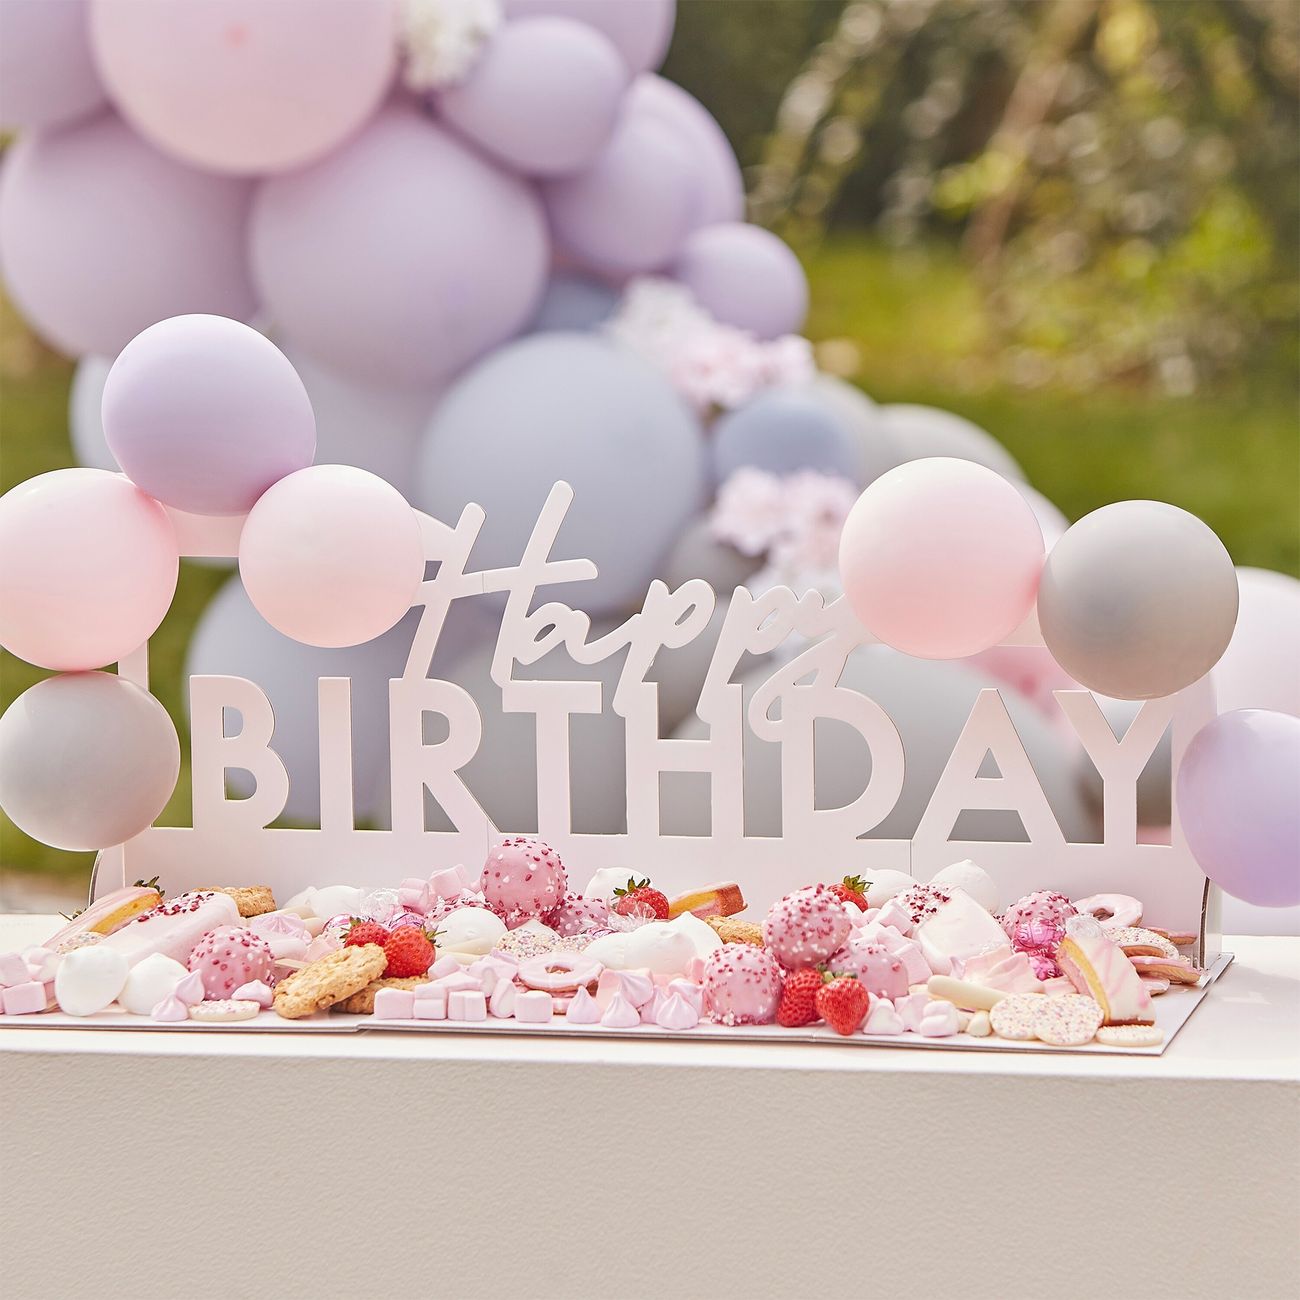 serveringsfat-happy-birthday-84232-2